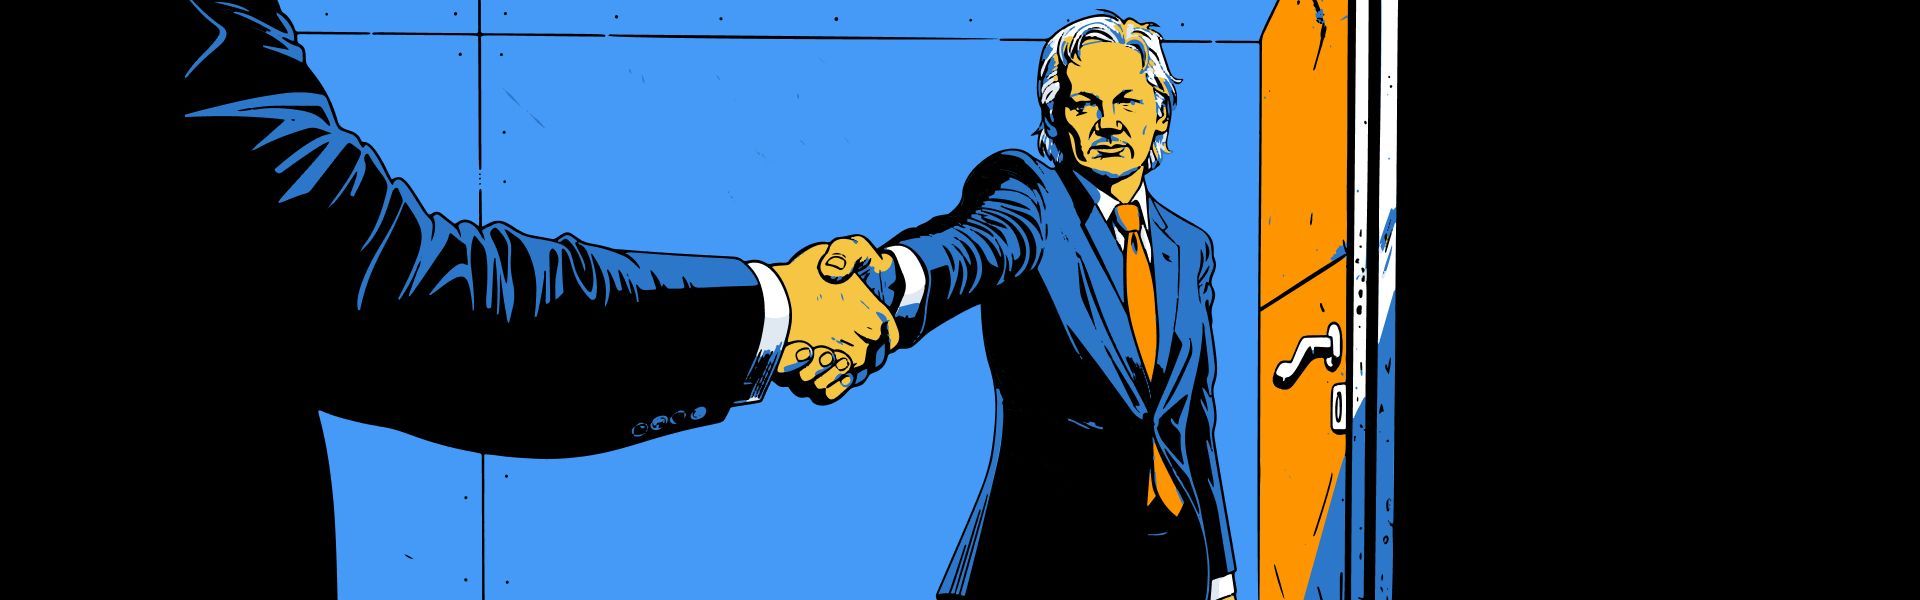 Assange schloss eine Vereinbarung mit der US-Regierung und wurde freigelassen